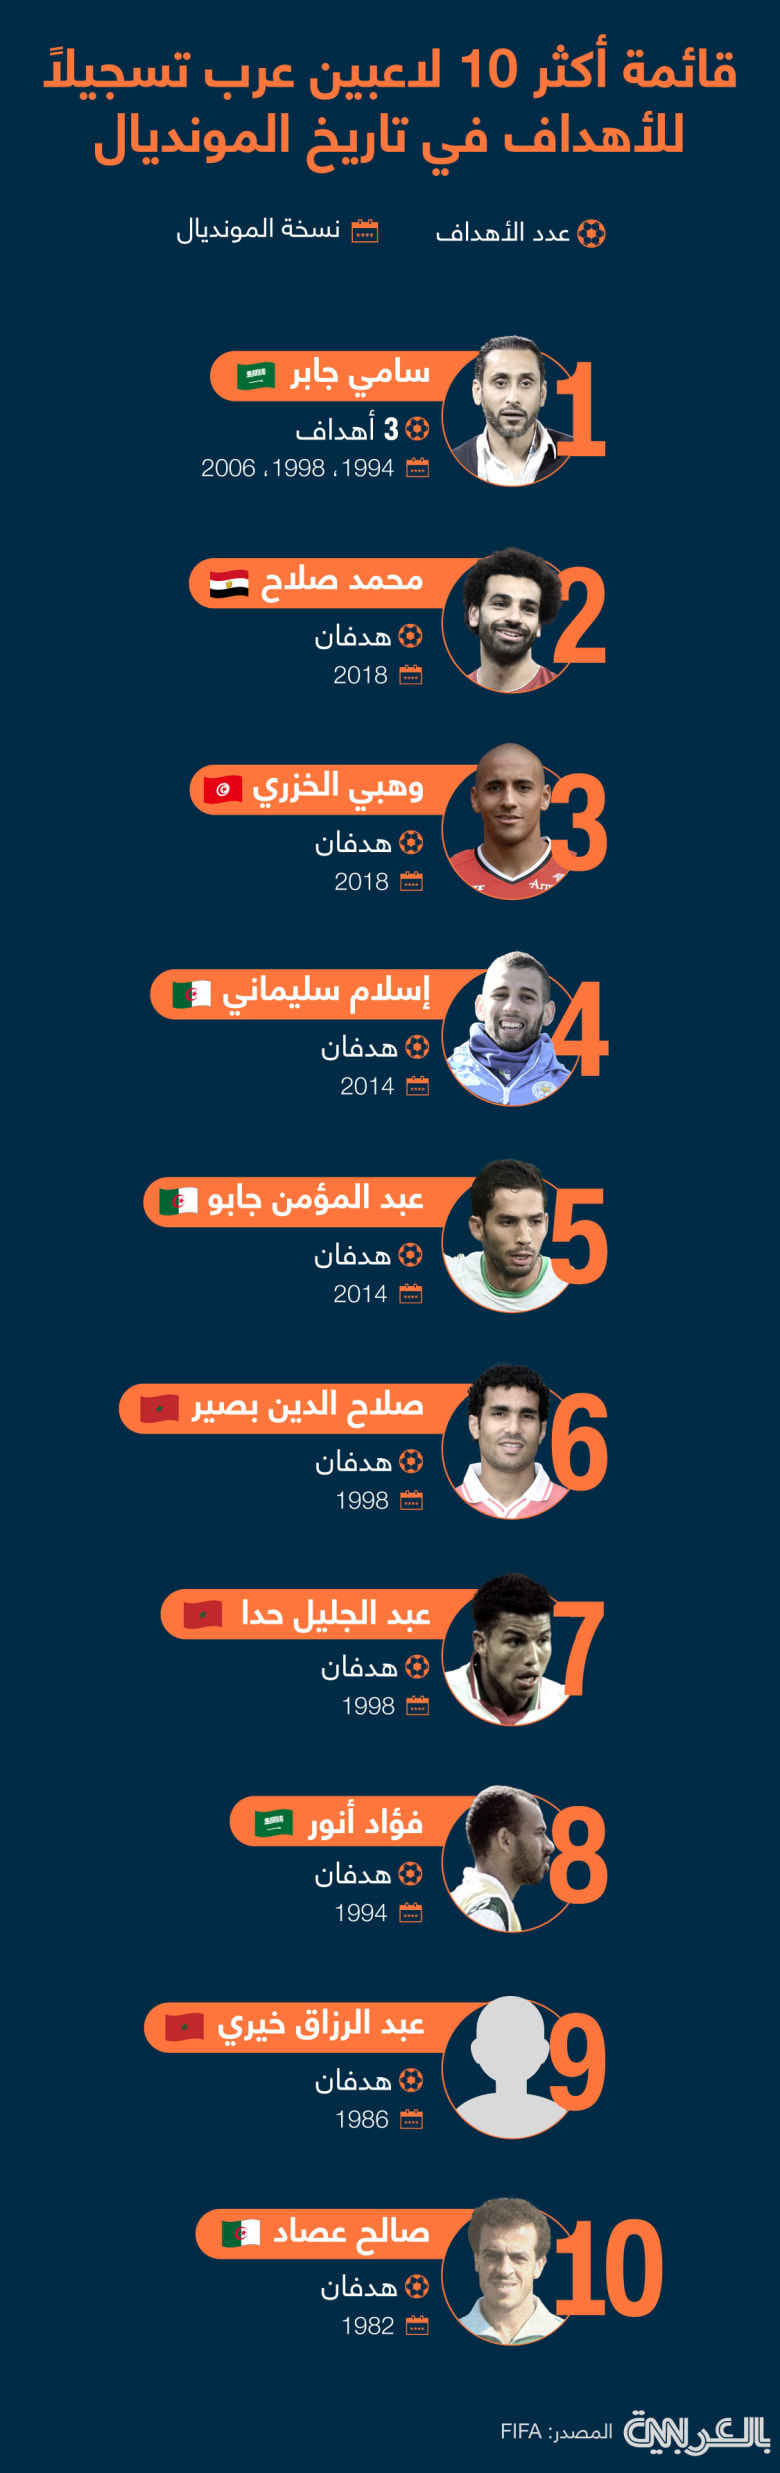 Top-scoring-Arab-players-WC